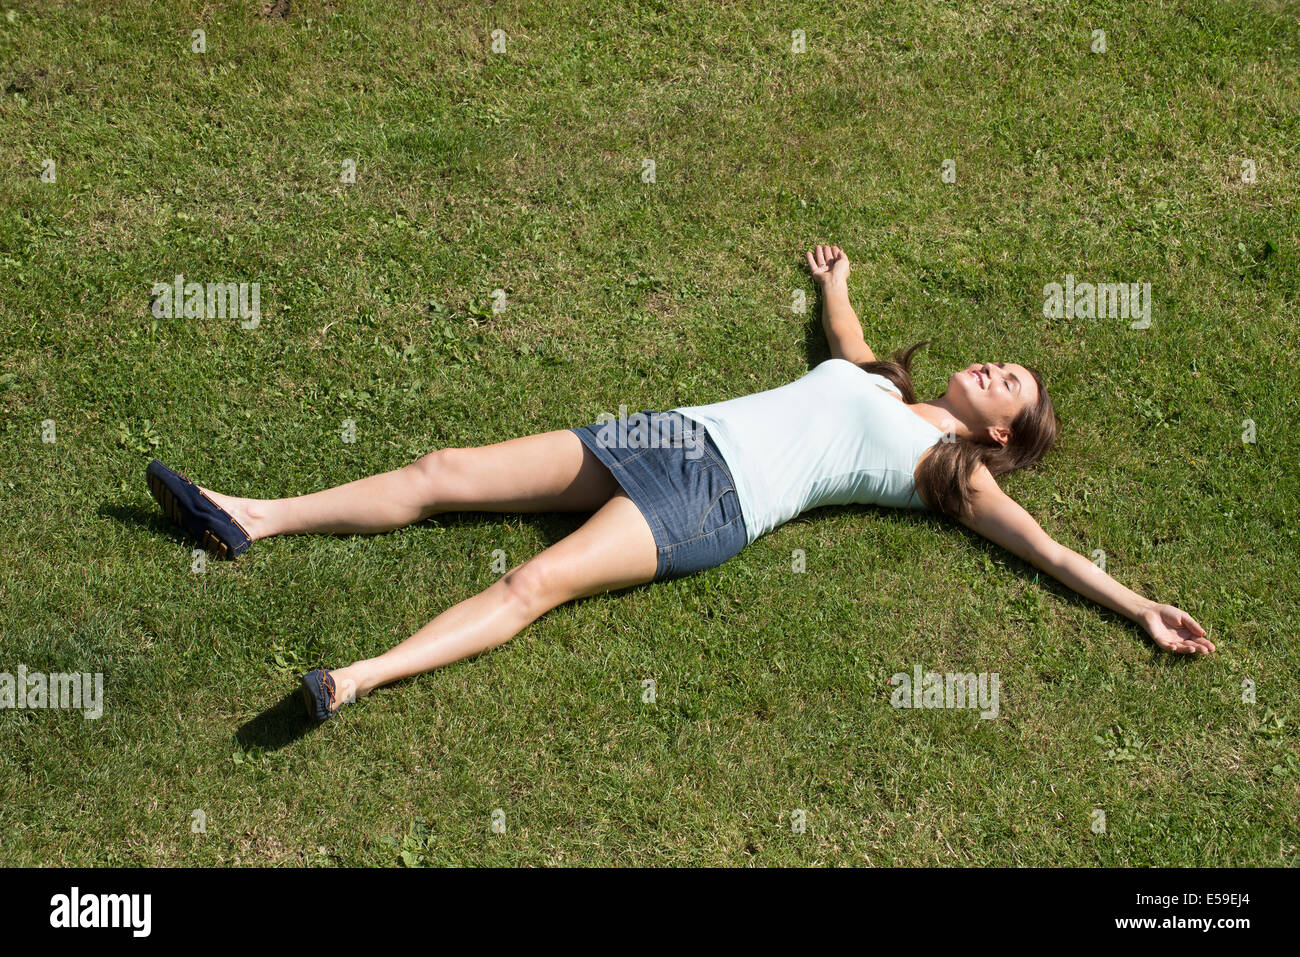 Jeune femme portant une mini jupe portant sur l'herbe avec les bras et les jambes tendus Banque D'Images